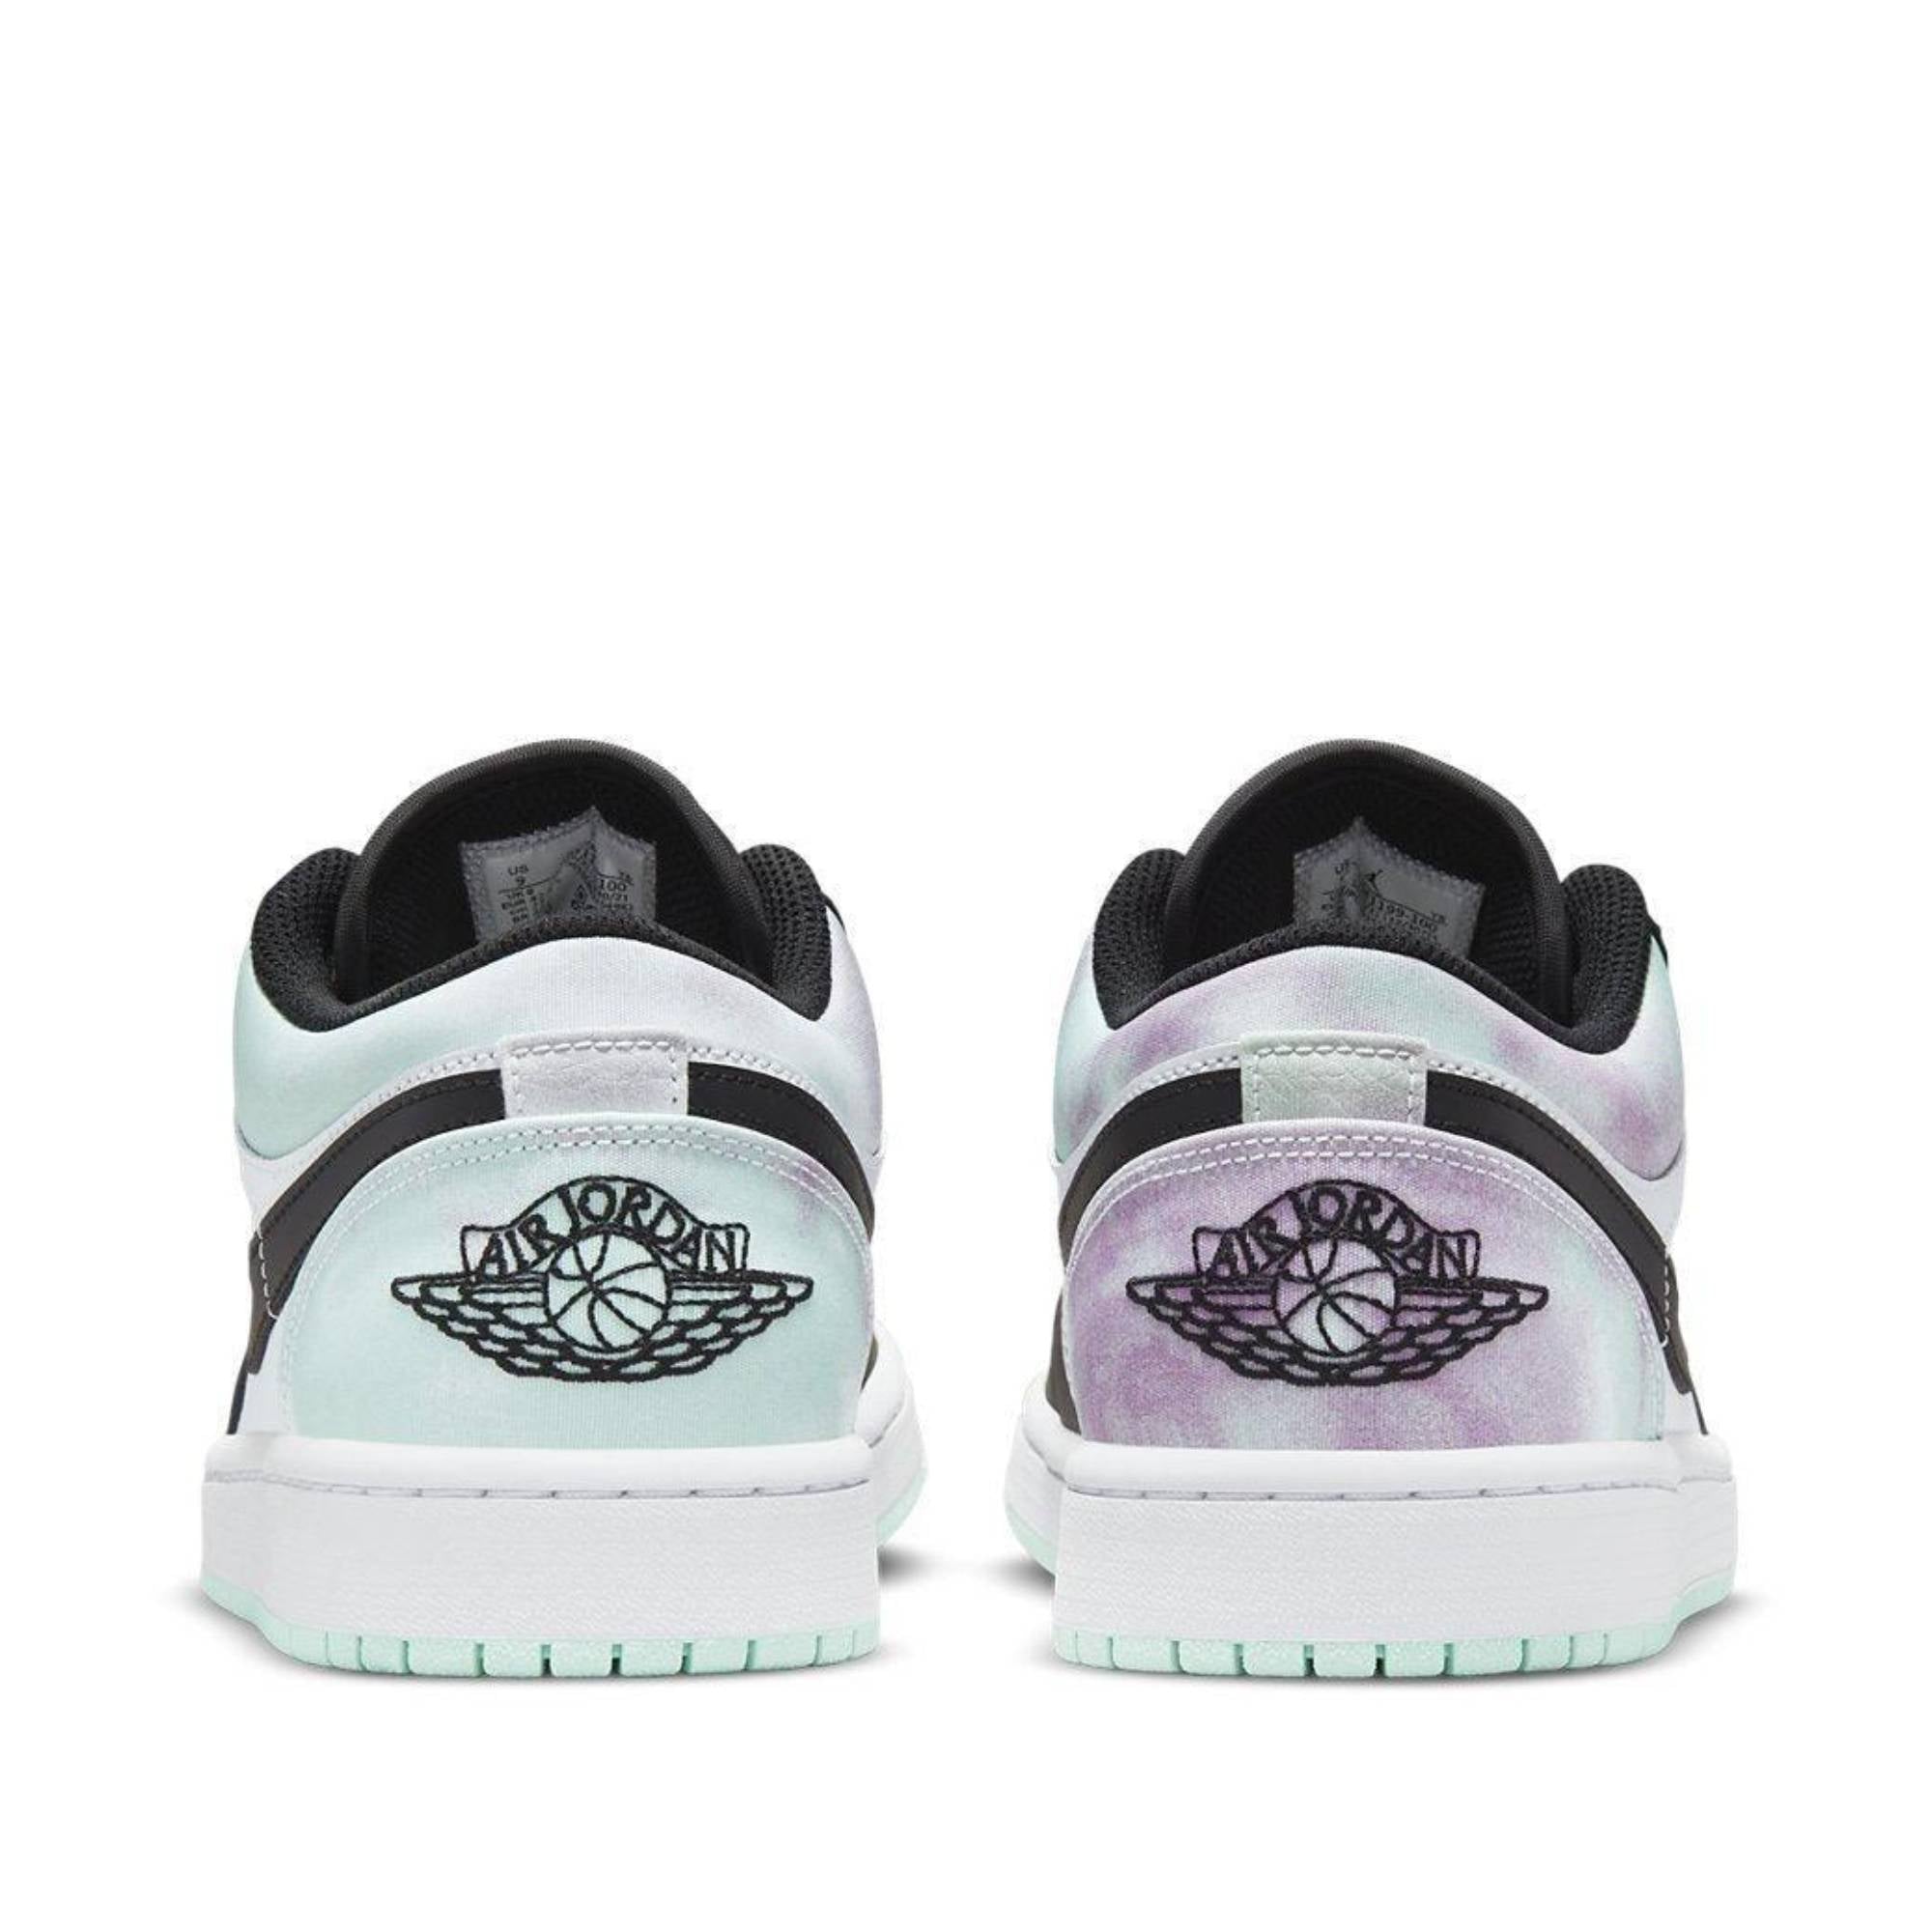 Air Jordan 1 Low Se ’Tie Dye’ Sneakers